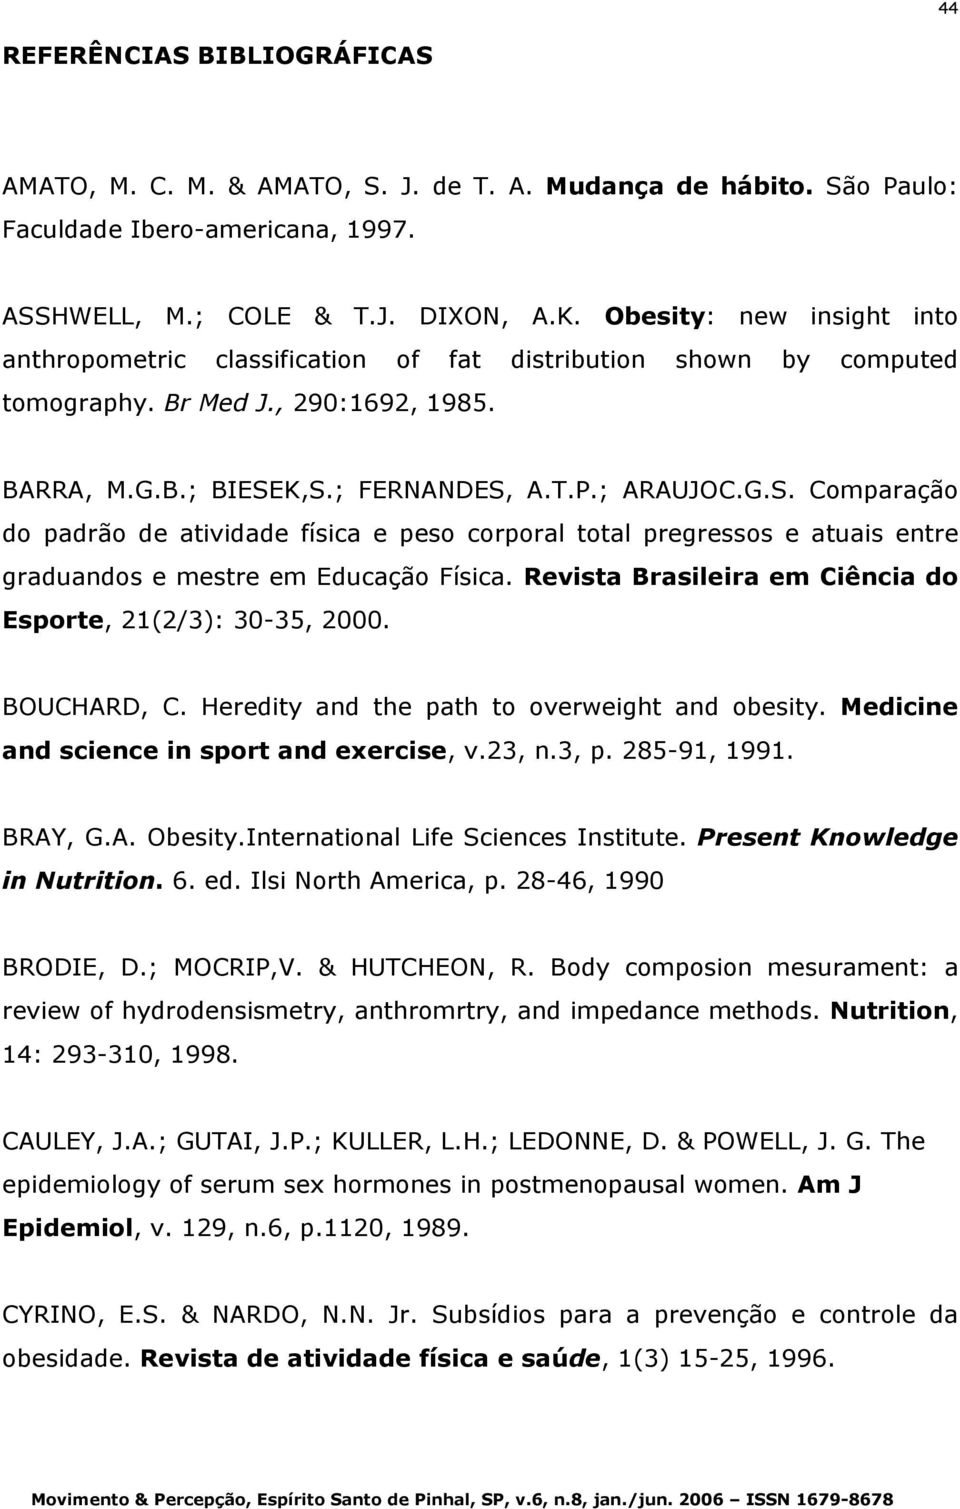 K,S.; FERNANDES, A.T.P.; ARAUJOC.G.S. Comparação do padrão de atividade física e peso corporal total pregressos e atuais entre graduandos e mestre em Educação Física.